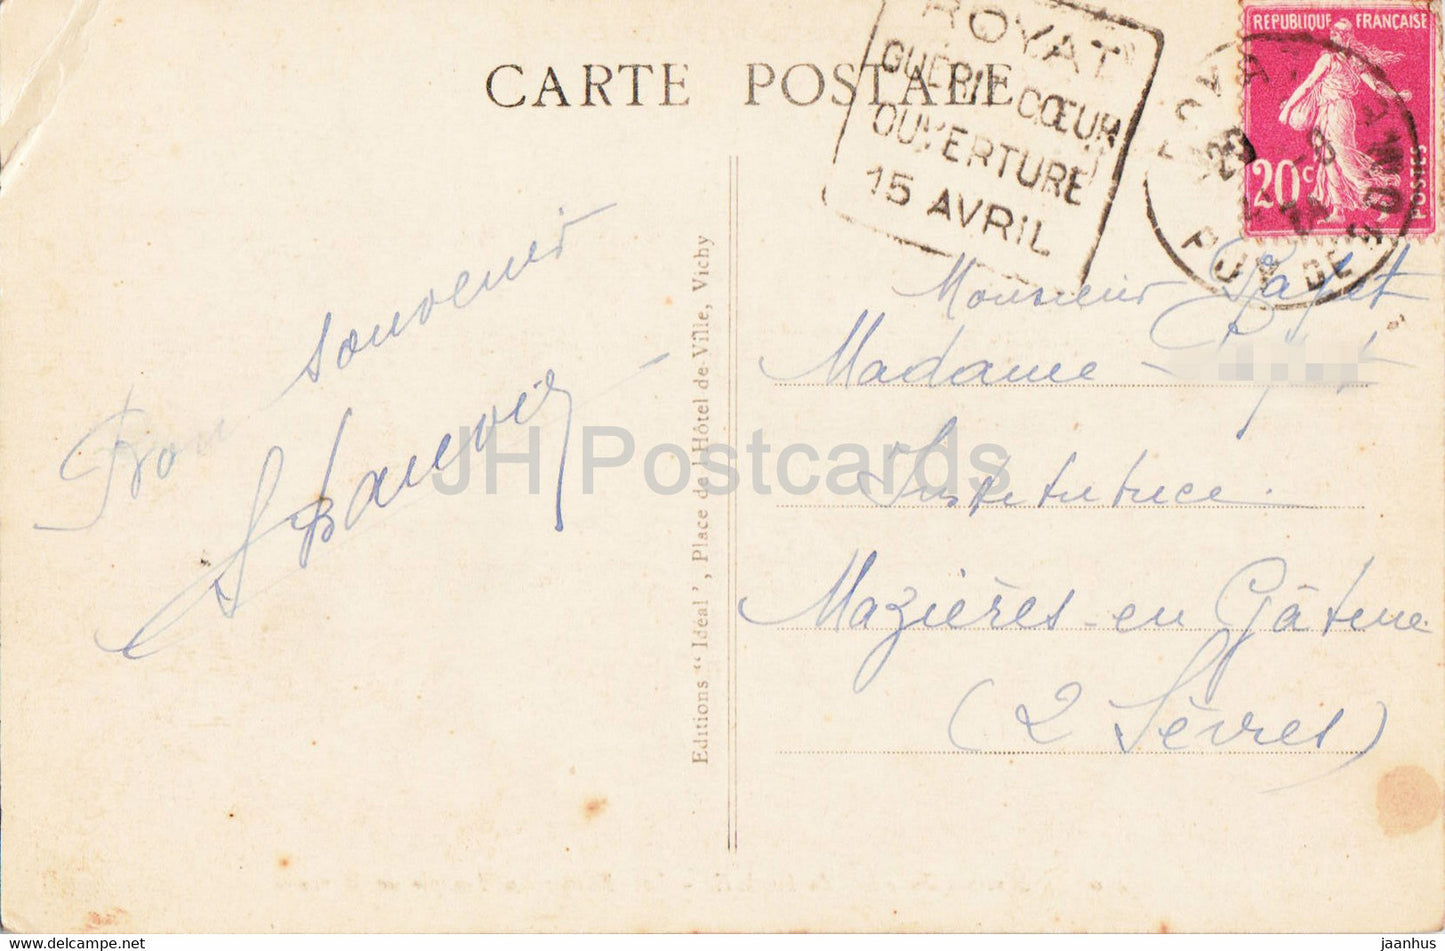 Sommet du Puy de Dome - Les Ruines du Temple de Mercure - 4304 - old postcard - 1934 - France - used